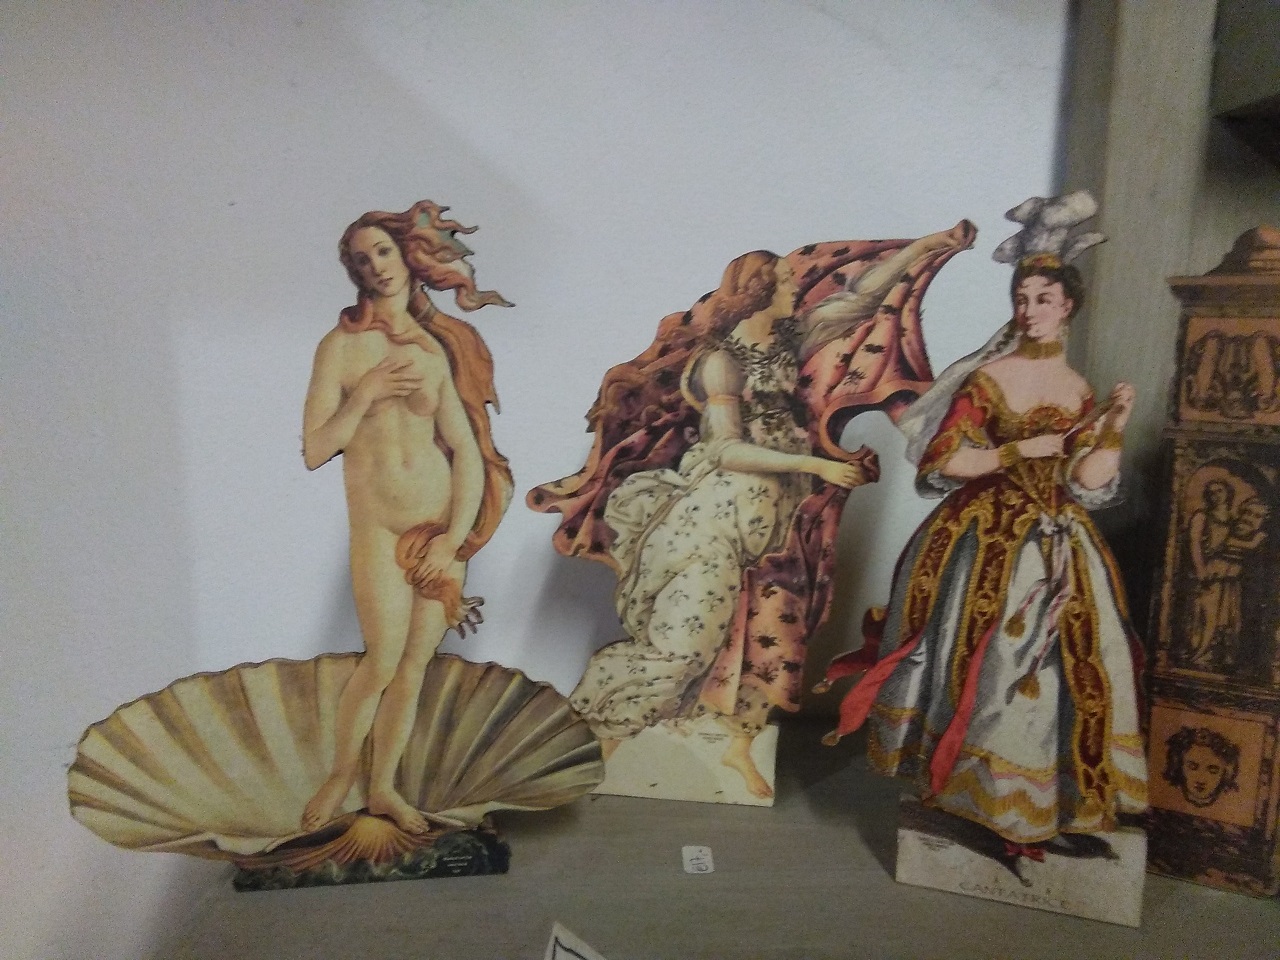 Grupo I de tres figuras distintas, la hora, y Venus cojidas del famoso cuadro "La nascita di Venere" de Sandro Botticelli y "la Cantatrice"